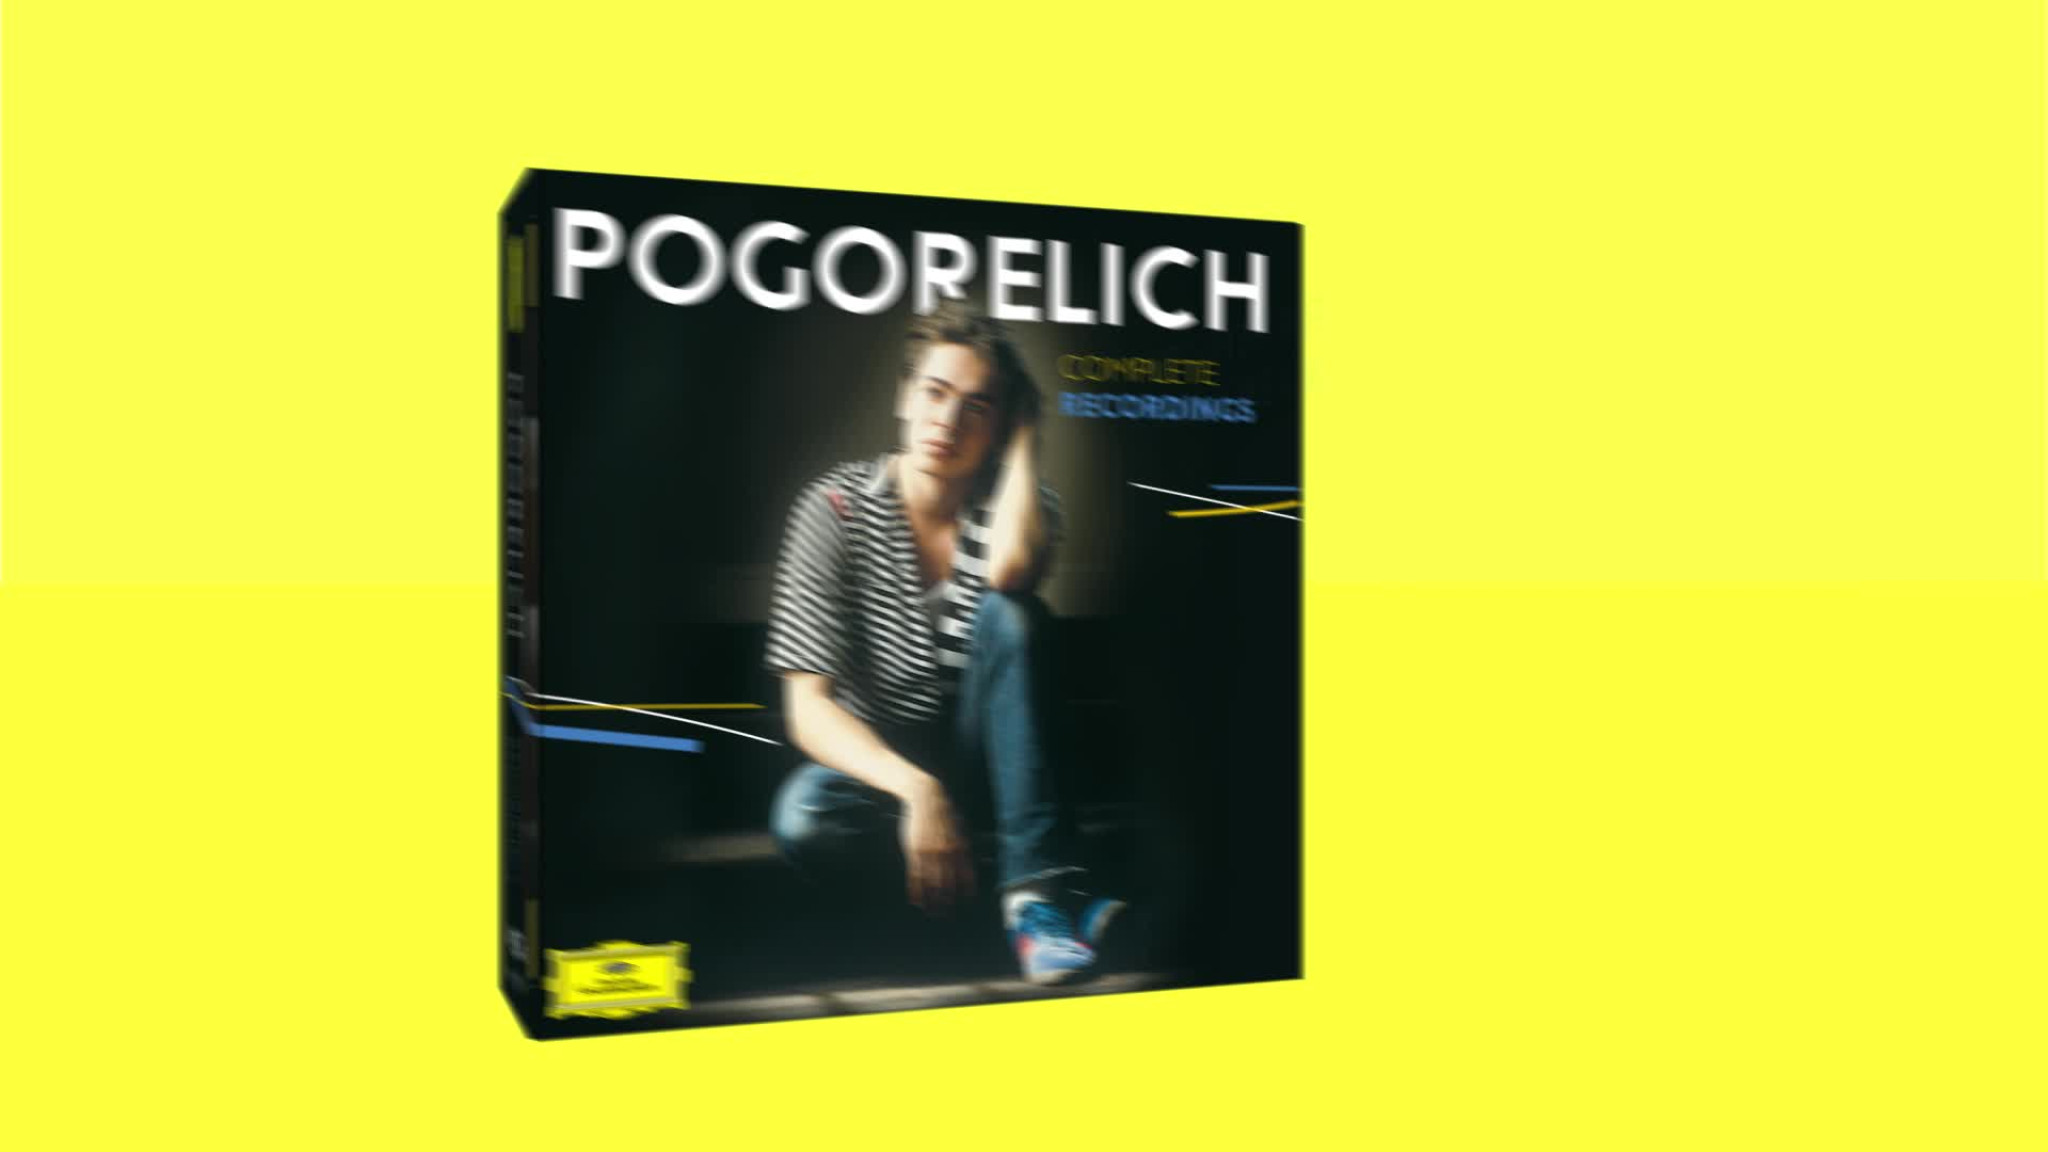 Ivo Pogorelich - Complete Recordings (Trailer)